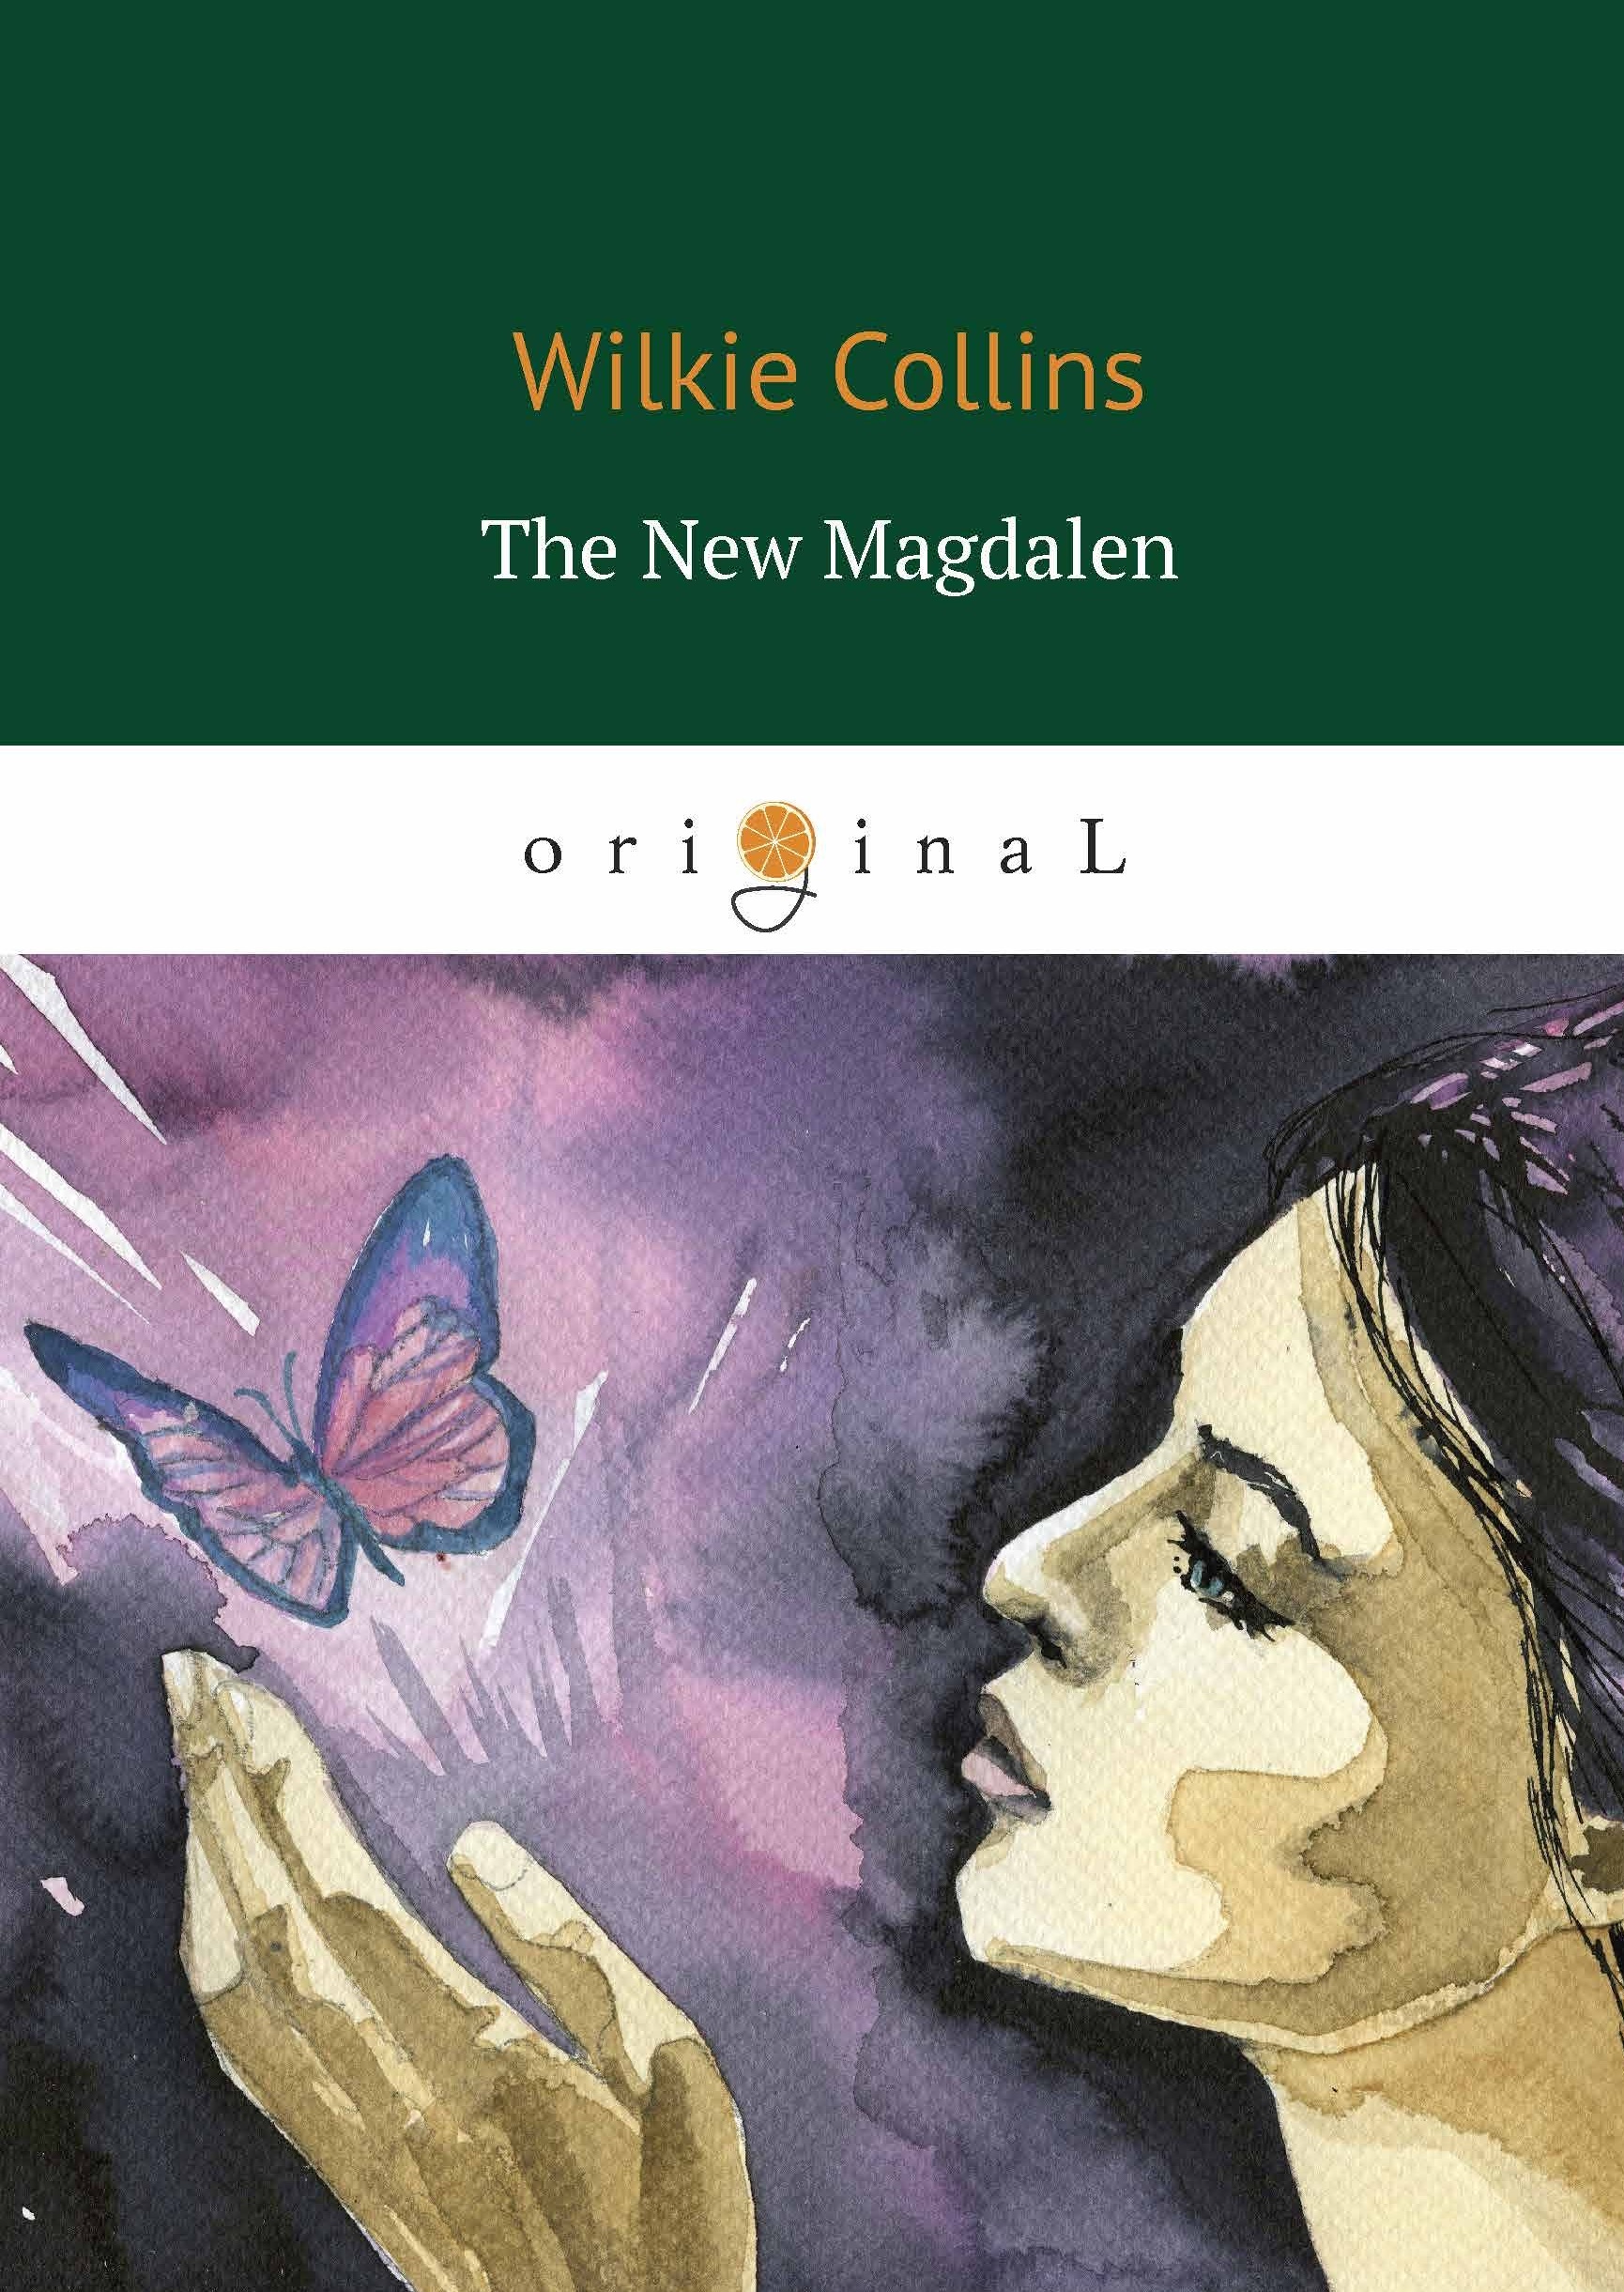 Коллинз Уильям Уилки, Collins Wilkie The New Magdalen цена и фото